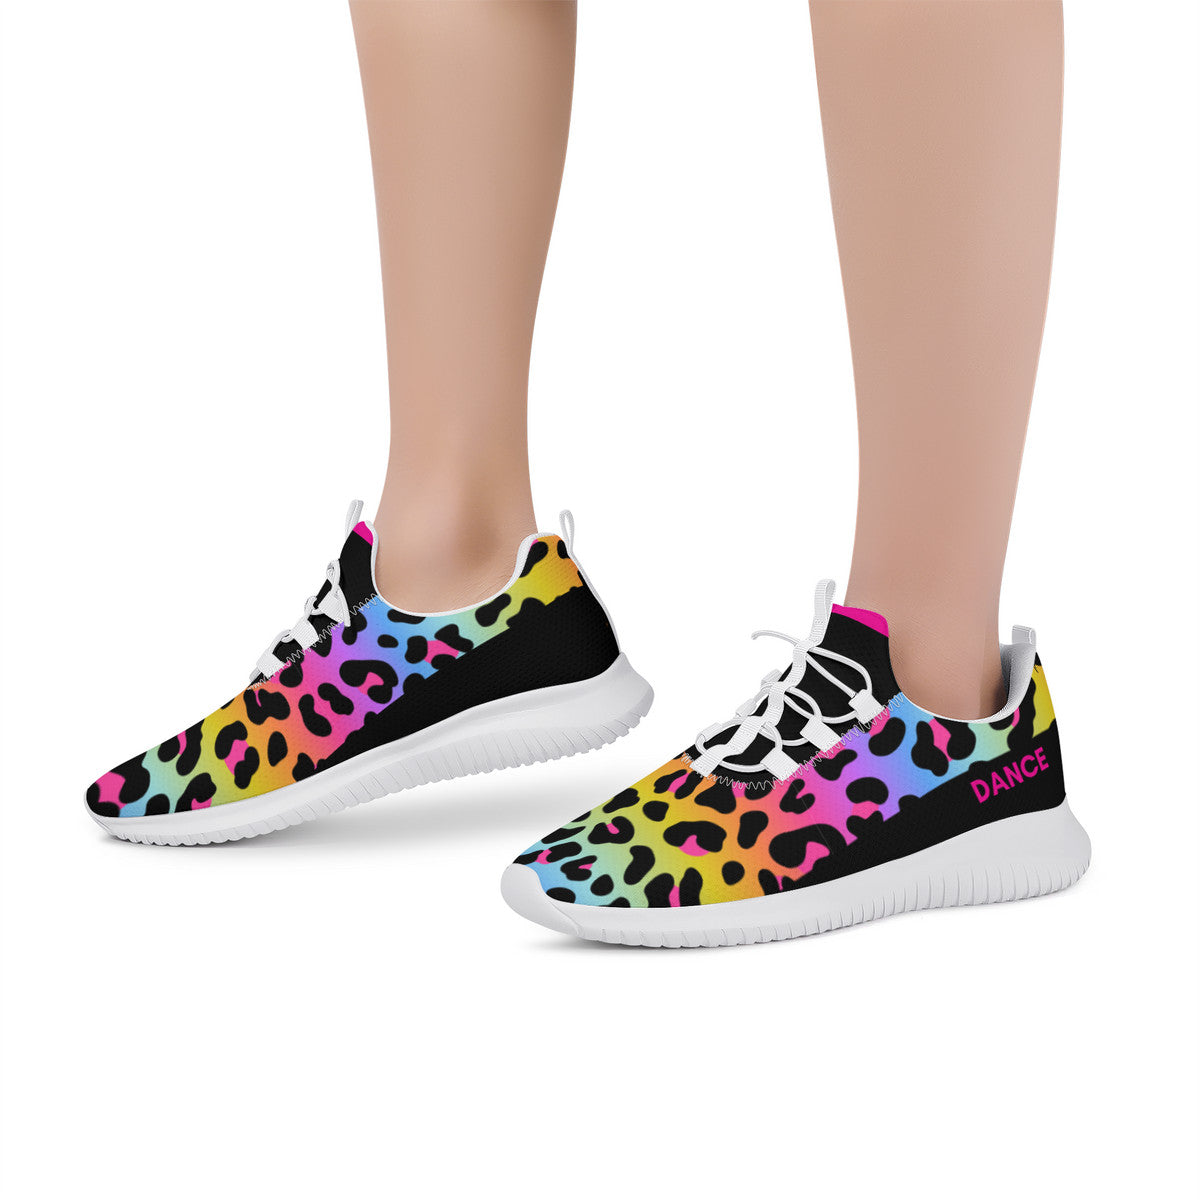 Dance Sneakers- Multi Color Leopard Print Dance Shoes